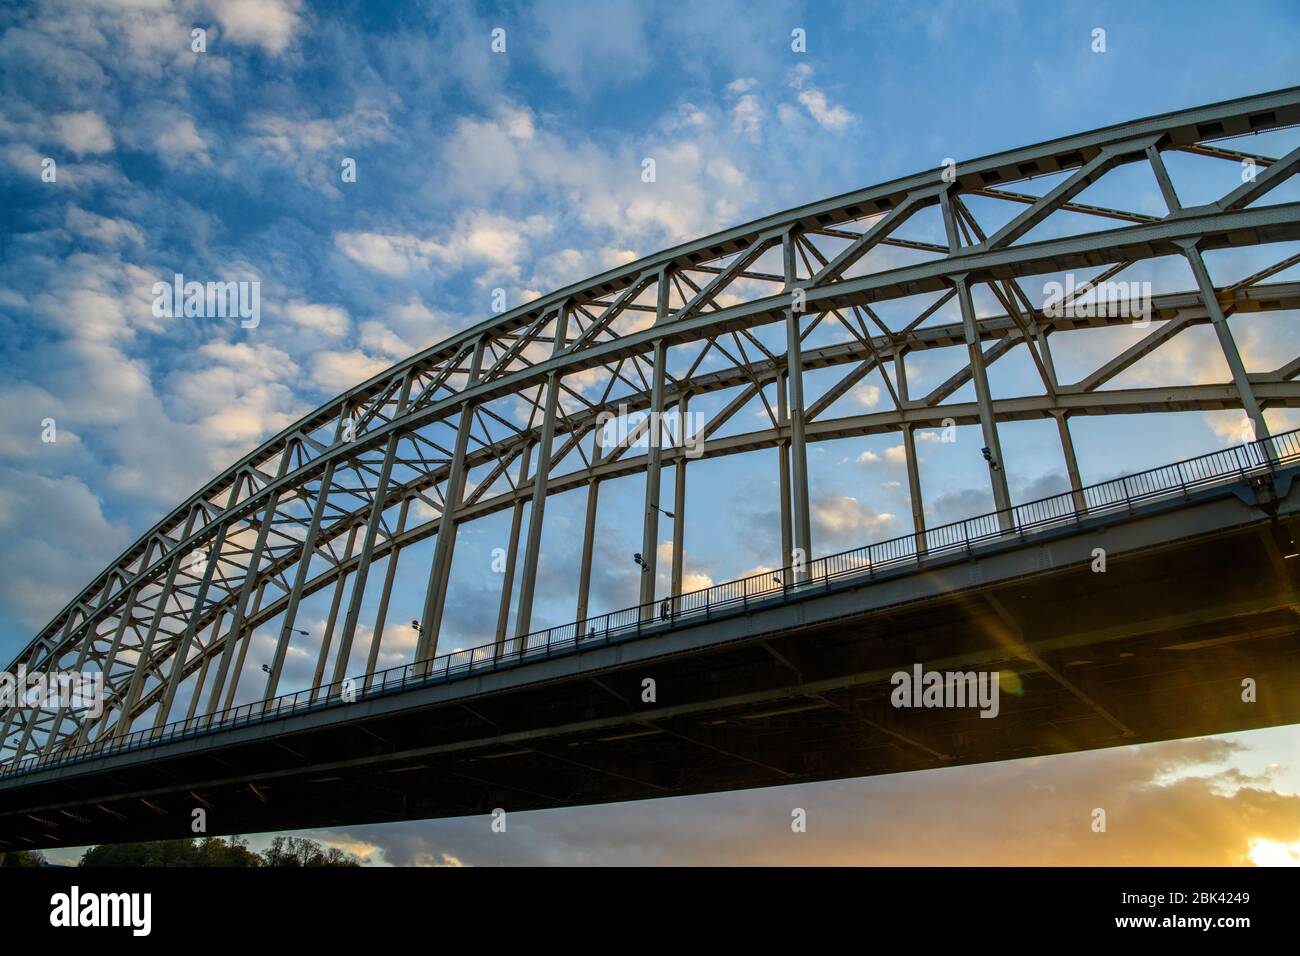 Waalbrug Bridge over the Waal River at sunset, Nijmegen, Gelderland, Netherlands Stock Photo